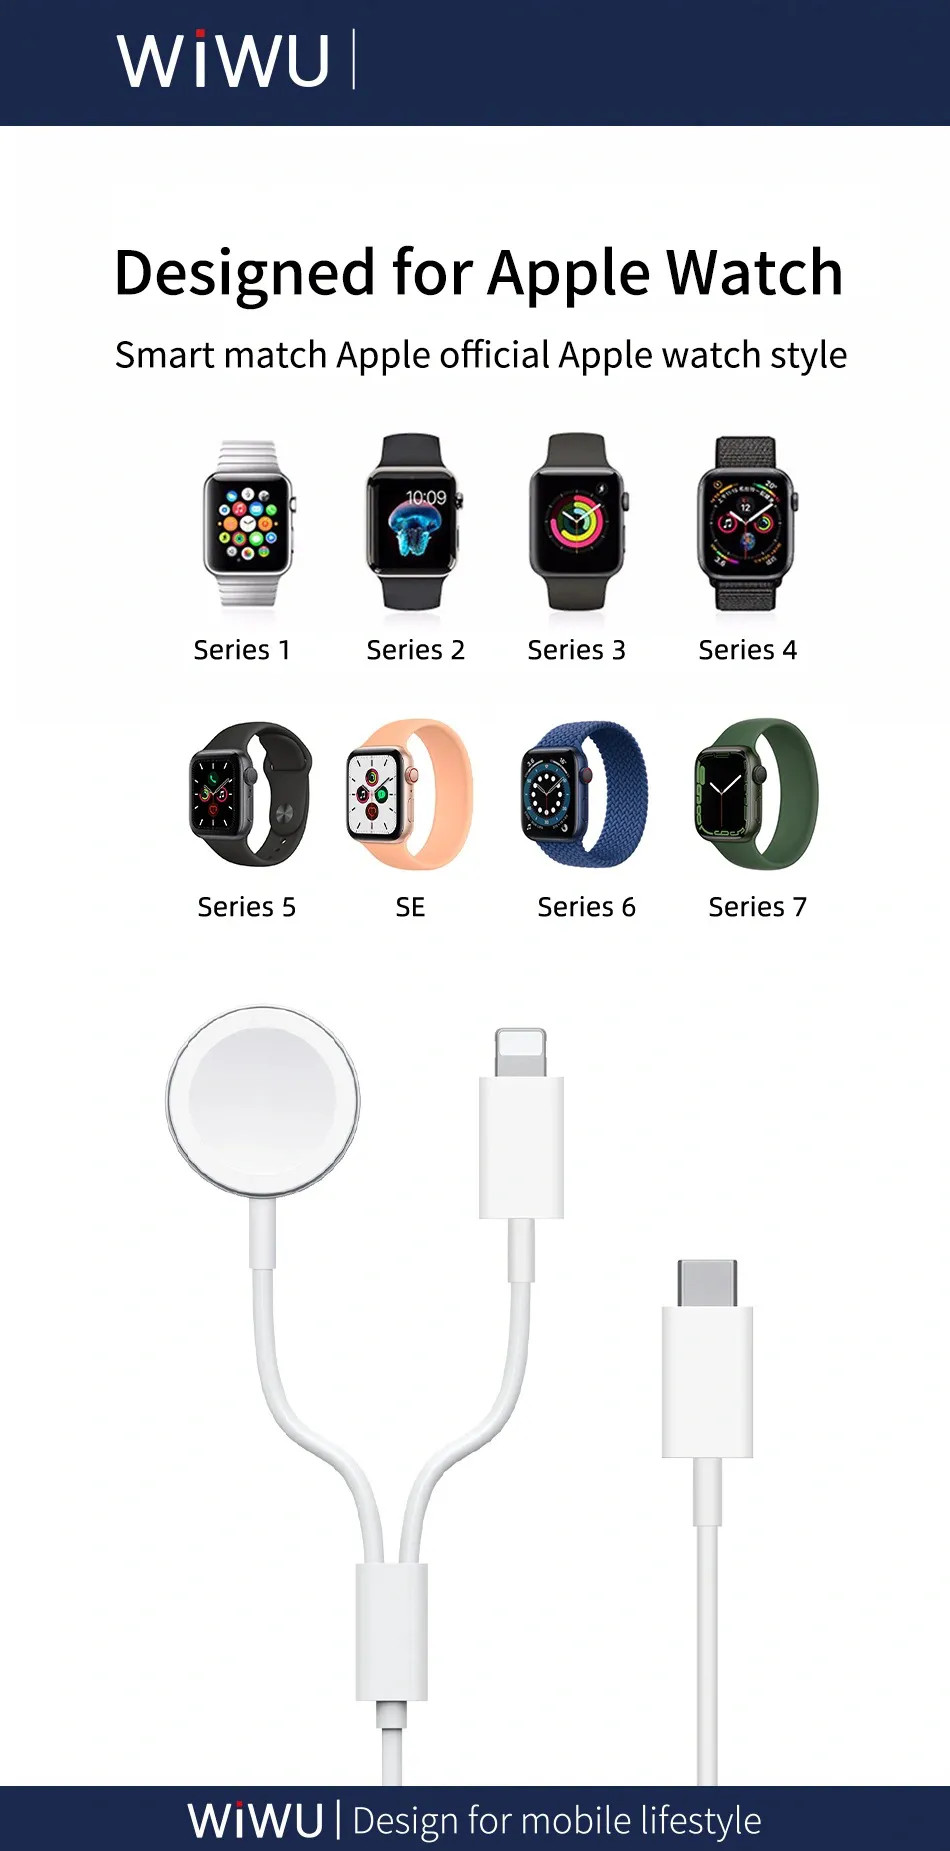 Dây cáp đế sạc nhanh 2.5W cho Apple Watch kiêm dây sạc Lightning cho iPhone / iPad / tai nghe AirPods / Airpods Pro hiệu WiWu M10 siêu nhỏ gọn, Sạc cùng lúc 2 thiết bị, chuẩn MFi Apple